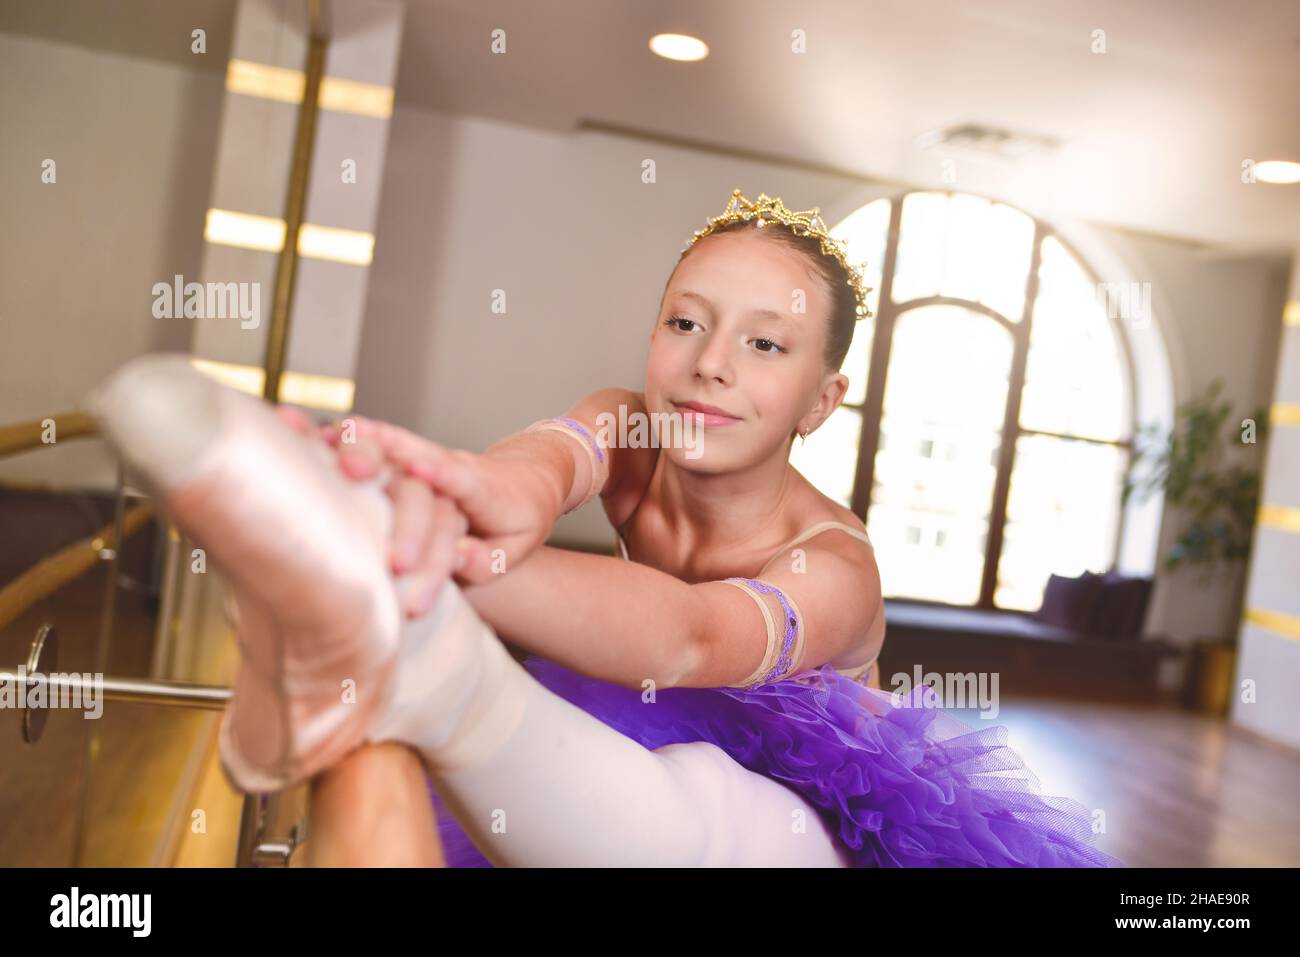 adolescente portant des chaussures pointe en classe de ballet, près d'un cadre et grand miroir elle fait des exercices et étirements Banque D'Images